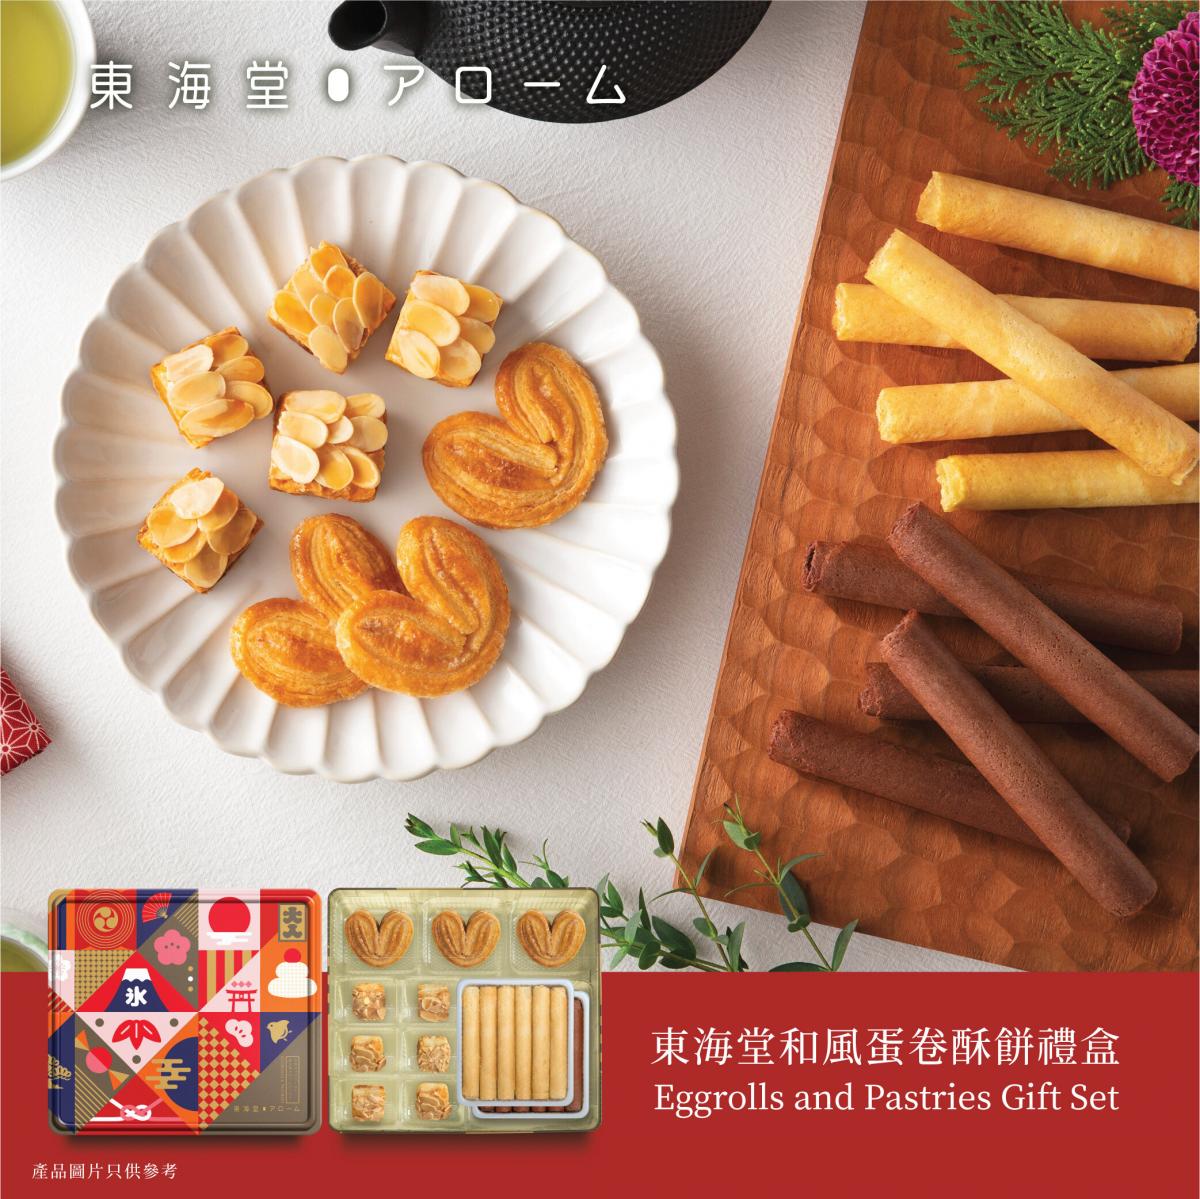 1 盒 - 東海堂和風蛋卷酥餅禮盒 (30件裝)【憑券換領，不設送貨】